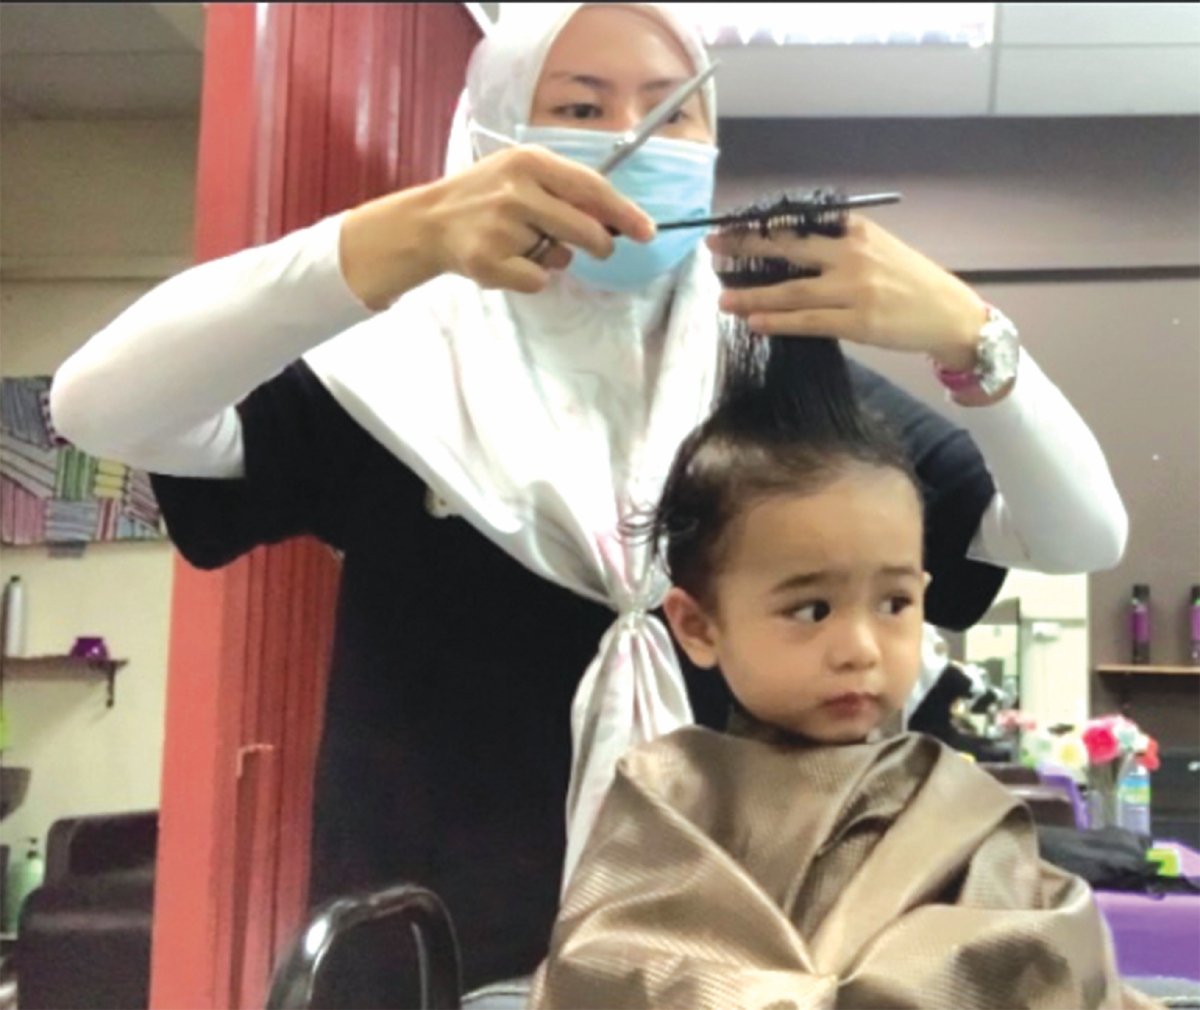 PERLU pastikan jenis rambut kanak-kanak sebelum membuat keputusan menggunakan peralatan pemotong rambut.